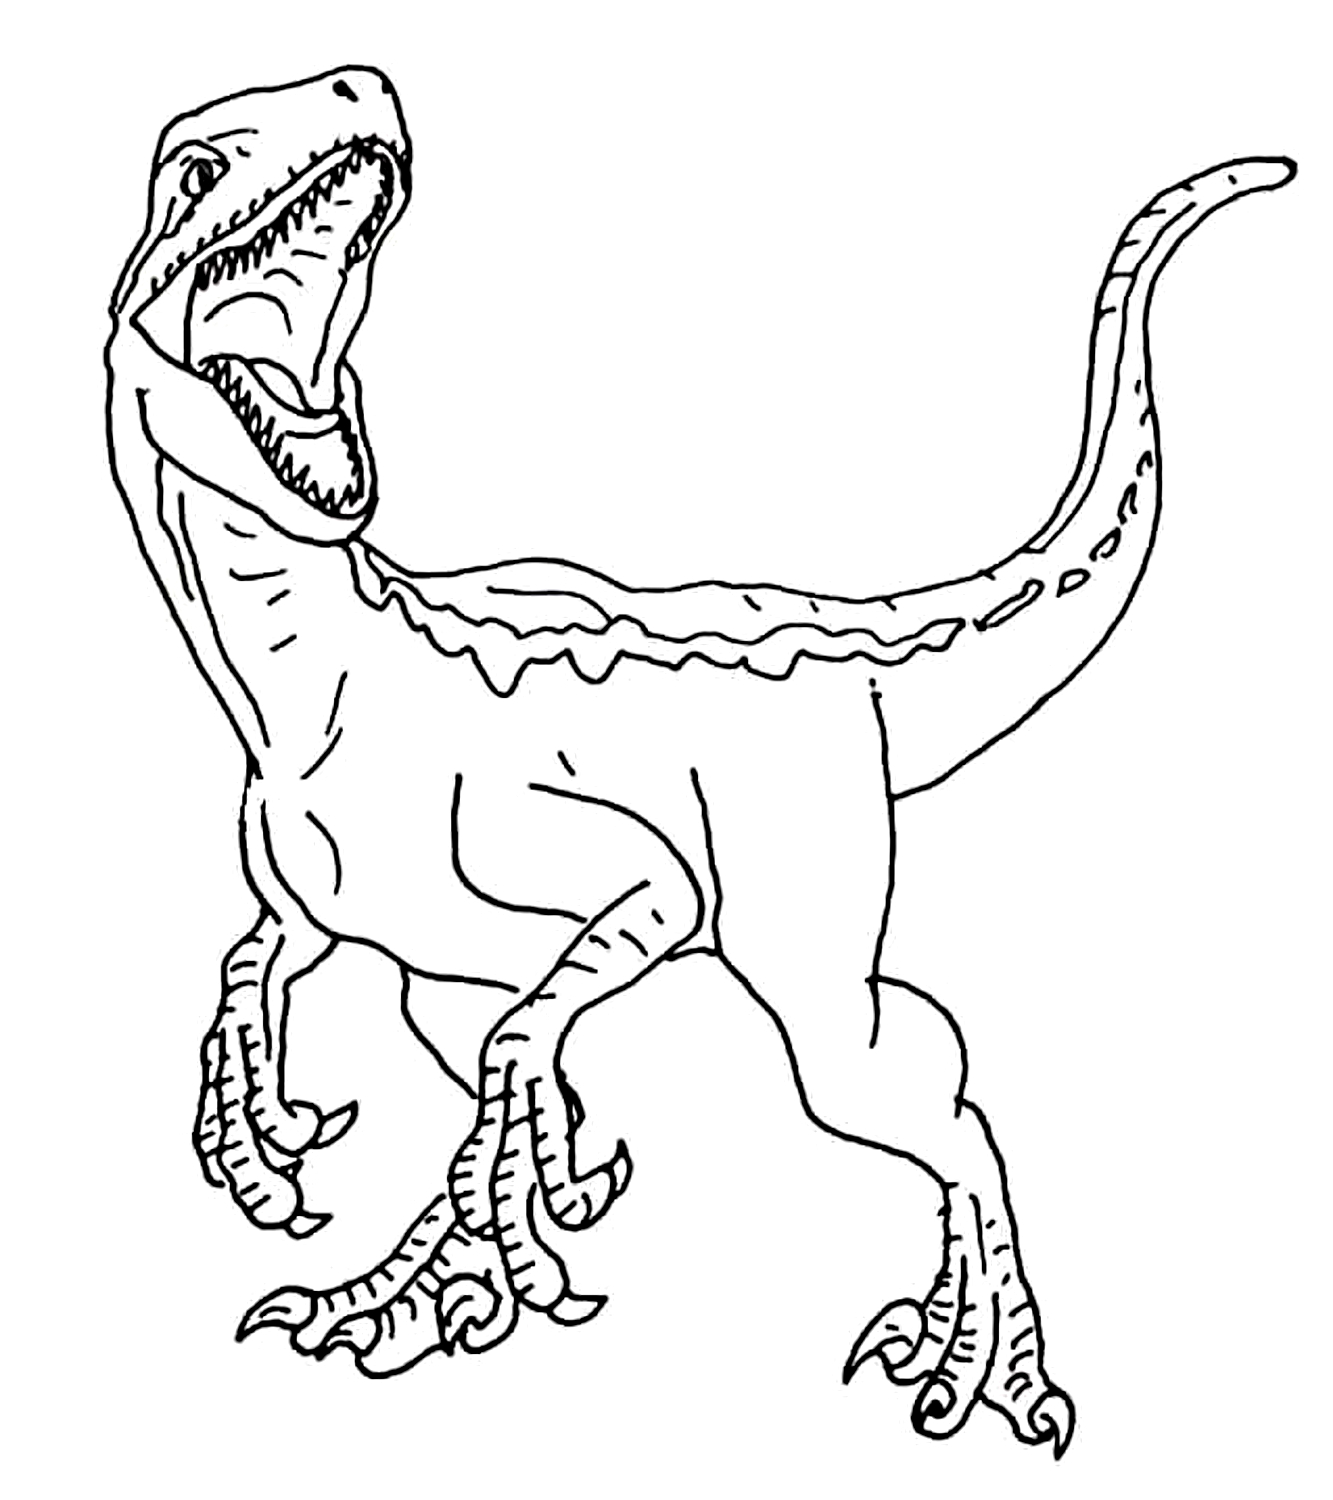 Disegno Jurassic World 08 di Jurassic World da stampare e colorare